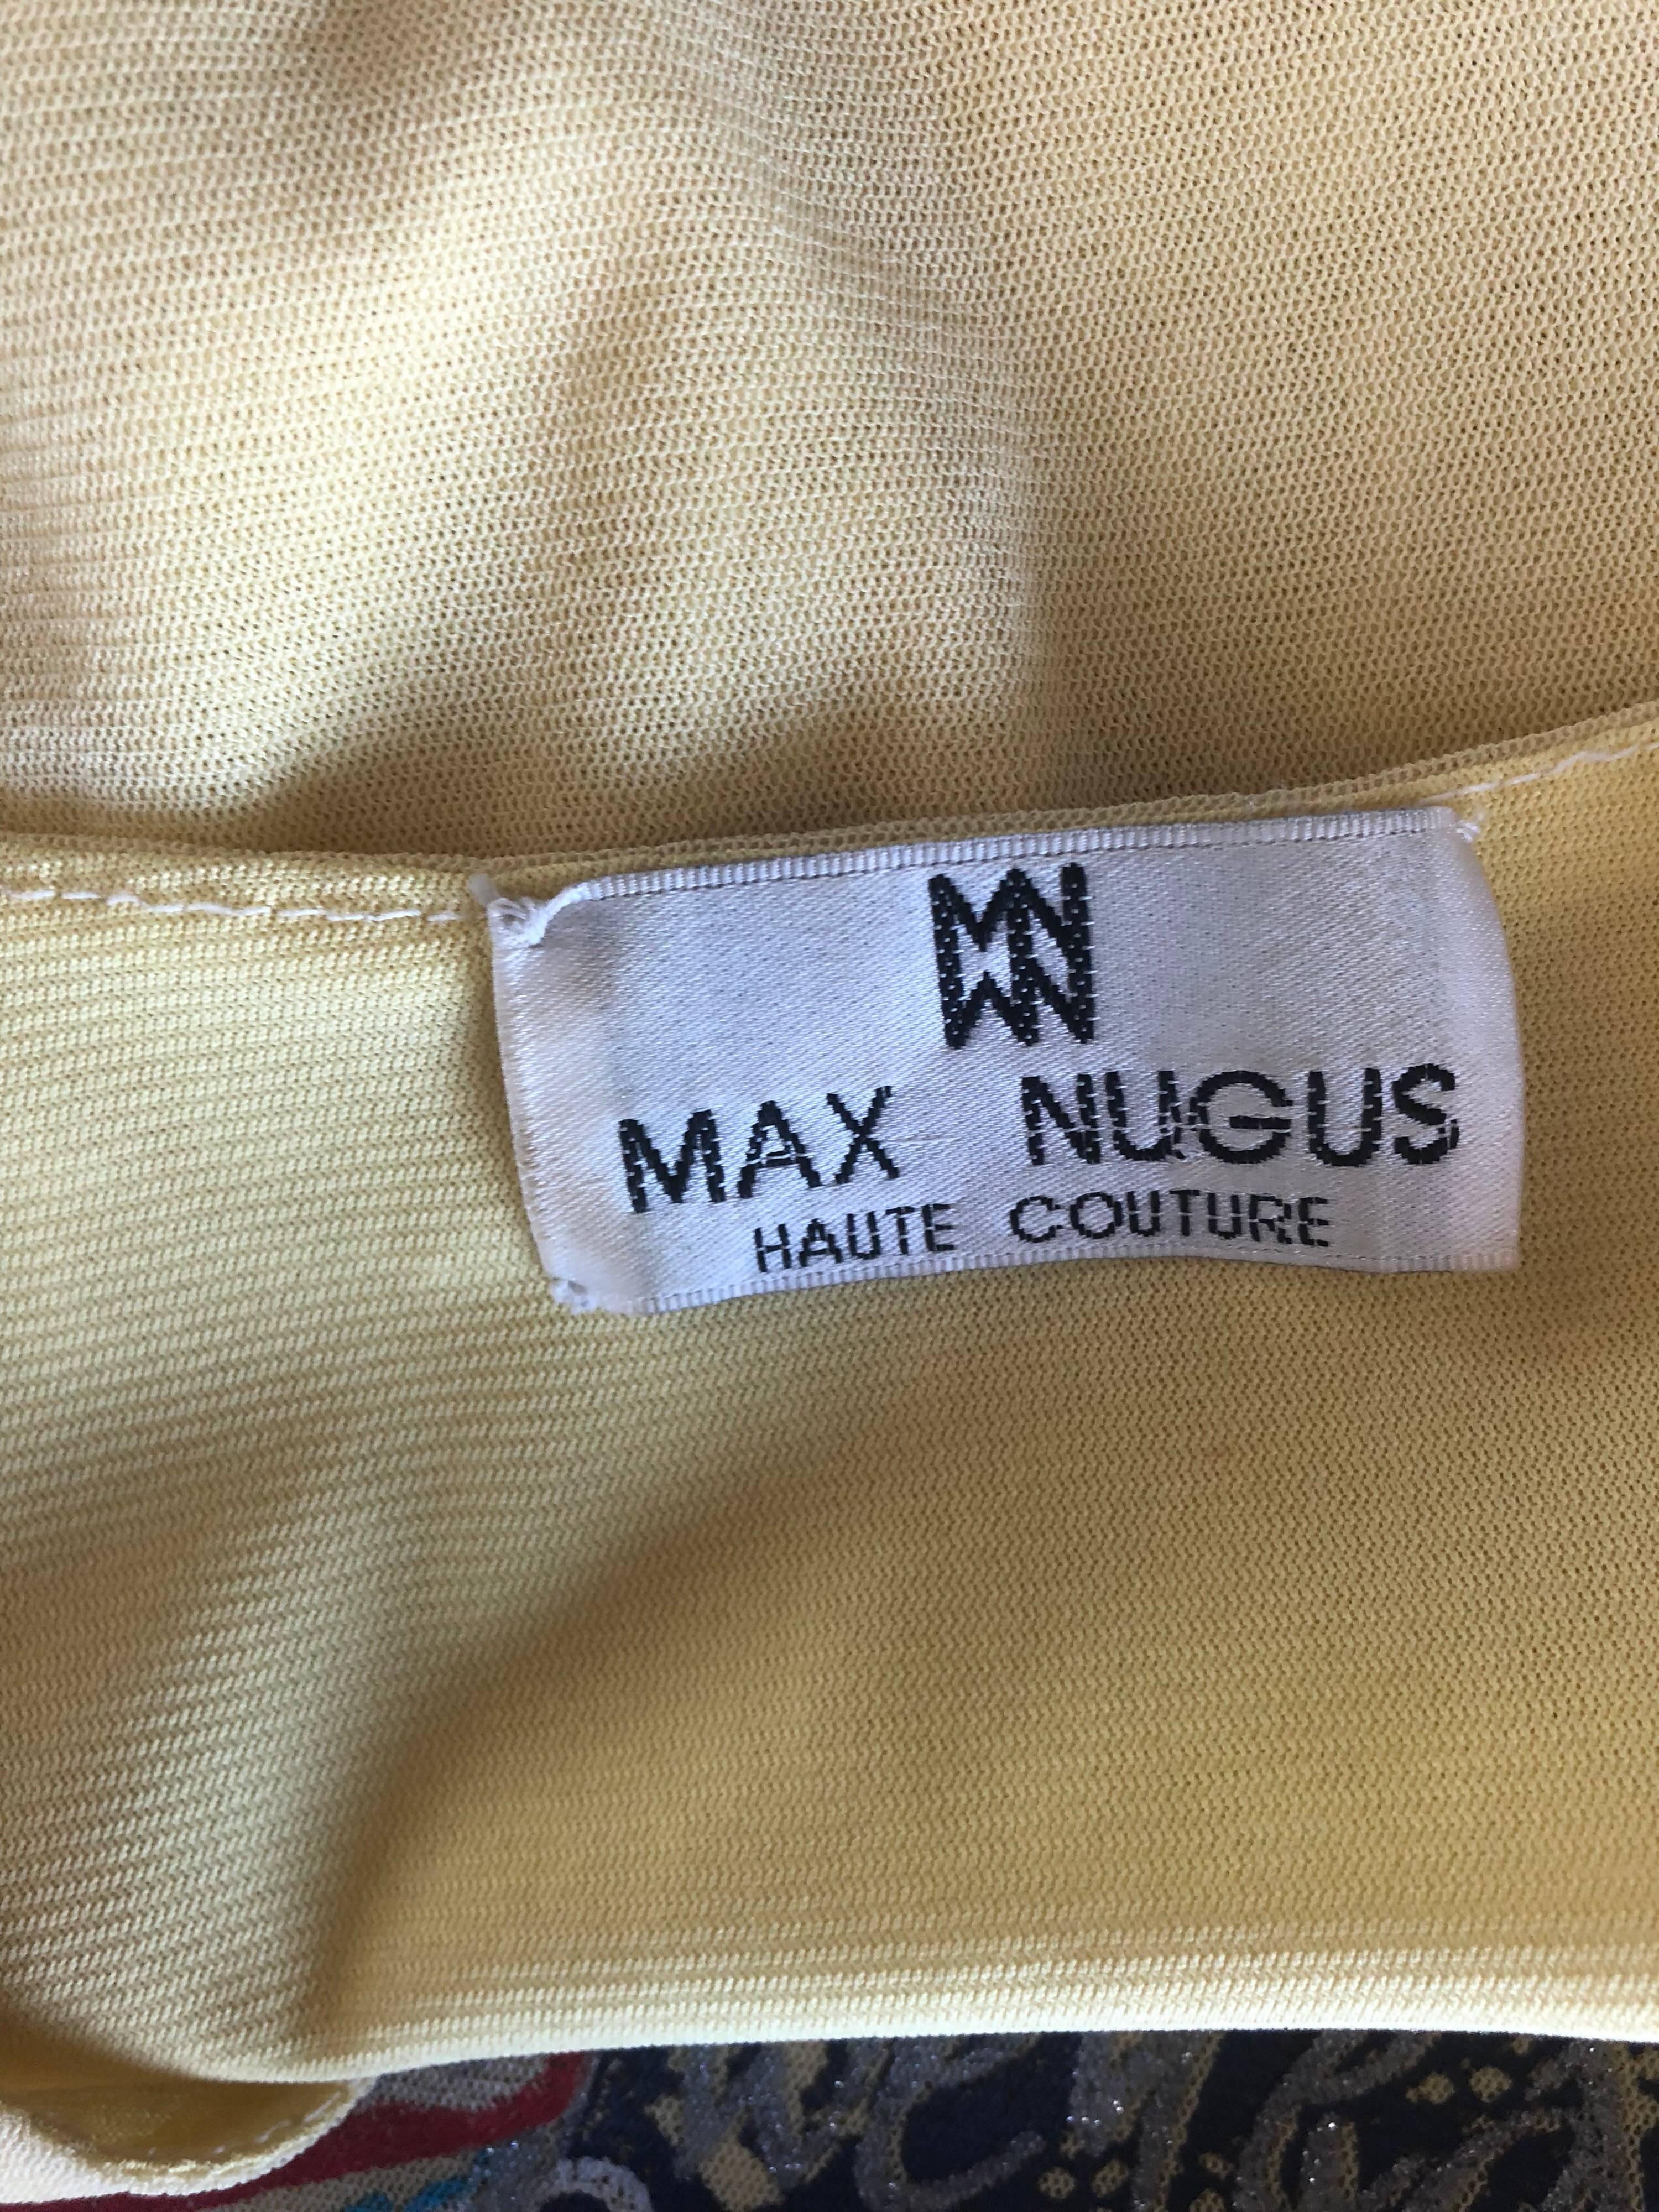 Max Nugus Haute Couture - Chemise à col V vintage en maille jaune imprimé graffiti, années 1990 en vente 8